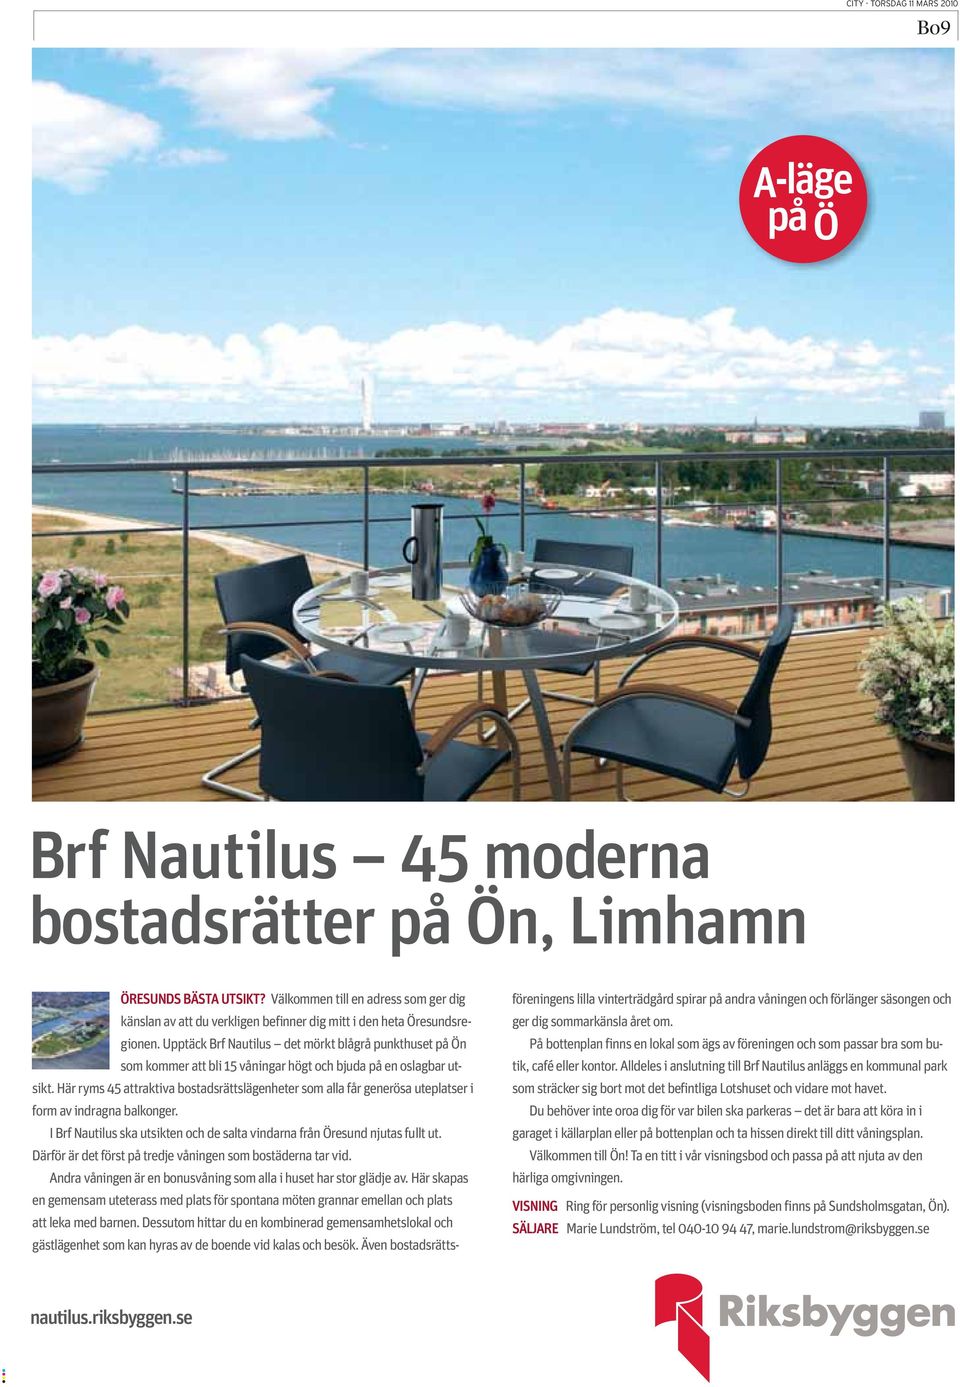 Här ryms 45 attraktiva bostadsrättslägenheter som alla får generösa uteplatser i form av indragna balkonger. I Brf Nautilus ska utsikten och de salta vindarna från Öresund njutas fullt ut.